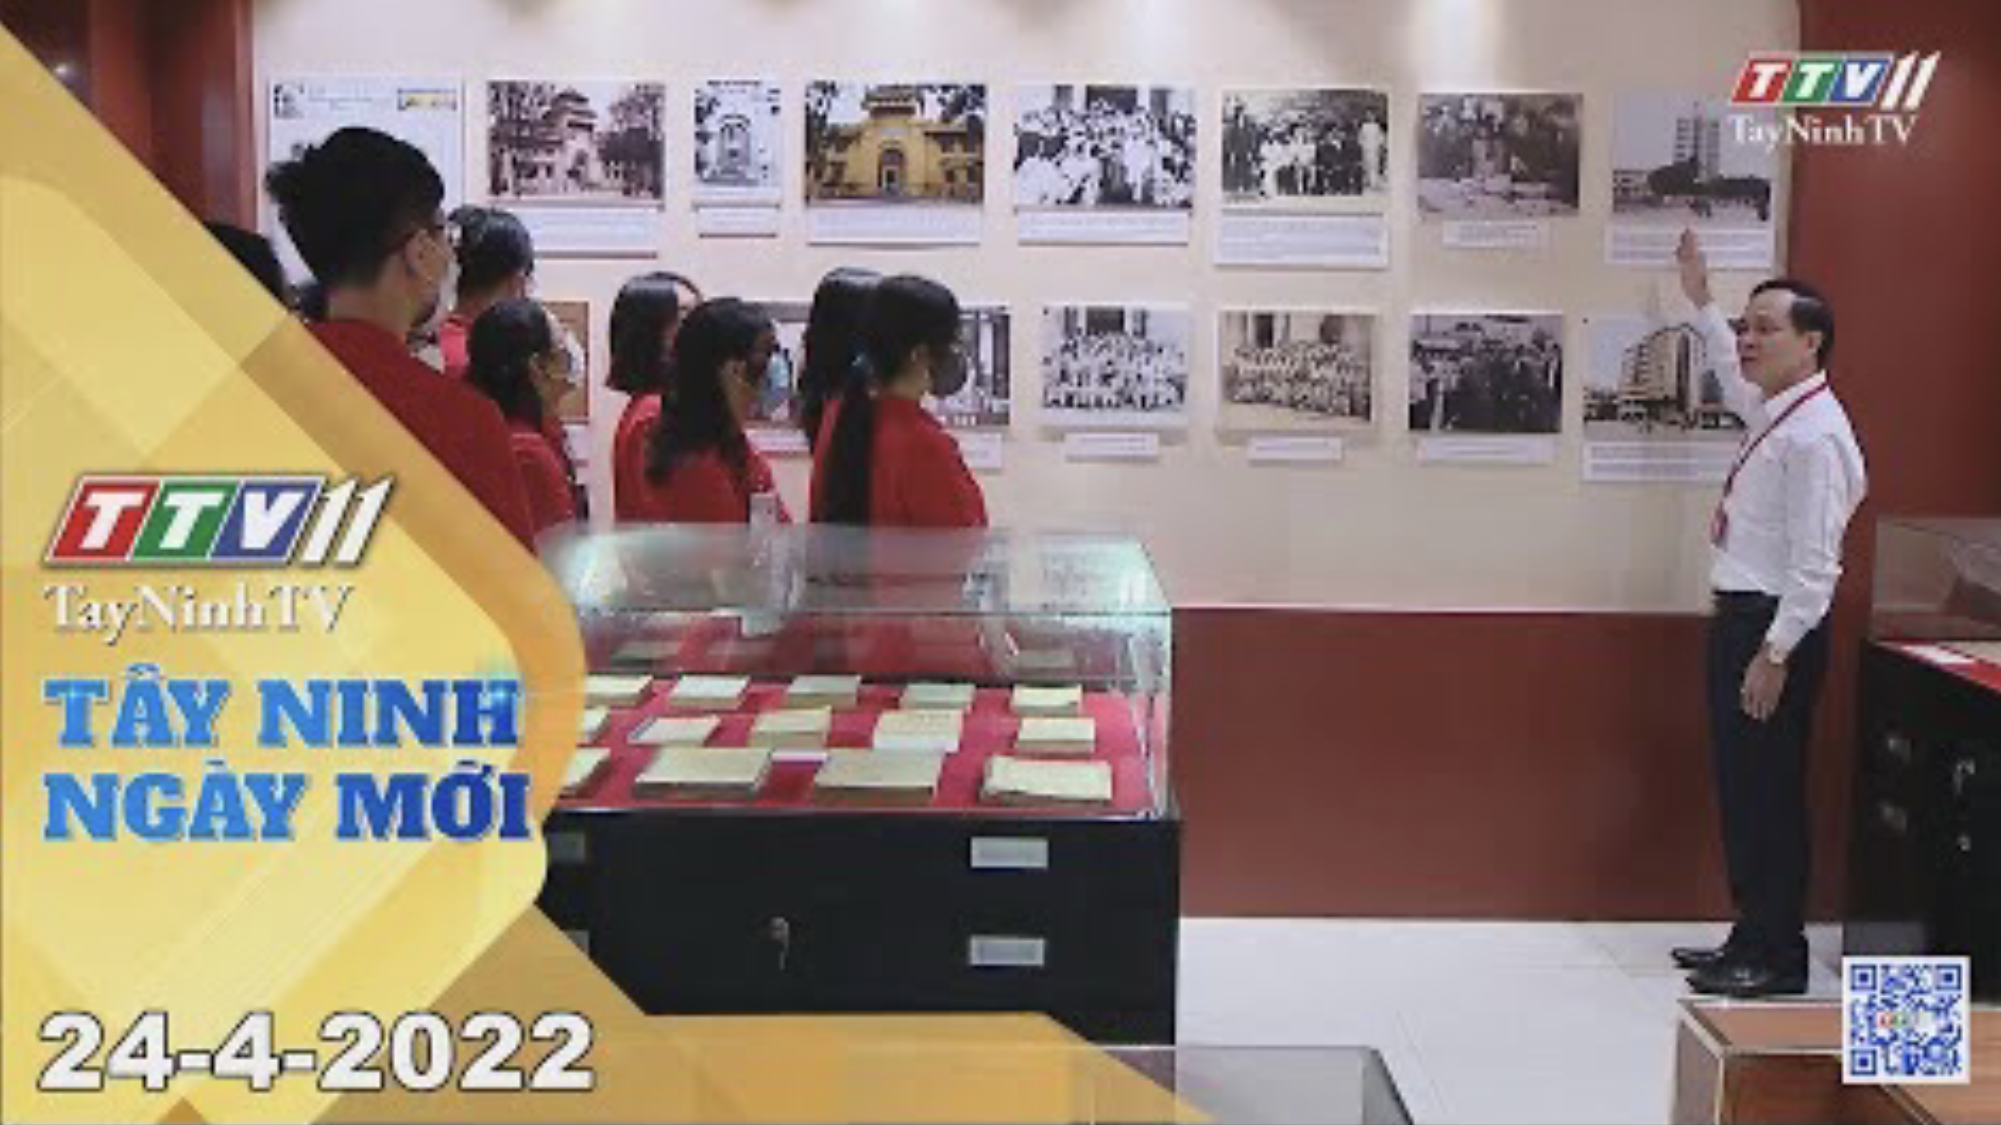 Tây Ninh ngày mới 24-4-2022| Tin tức hôm nay | TayNinhTV